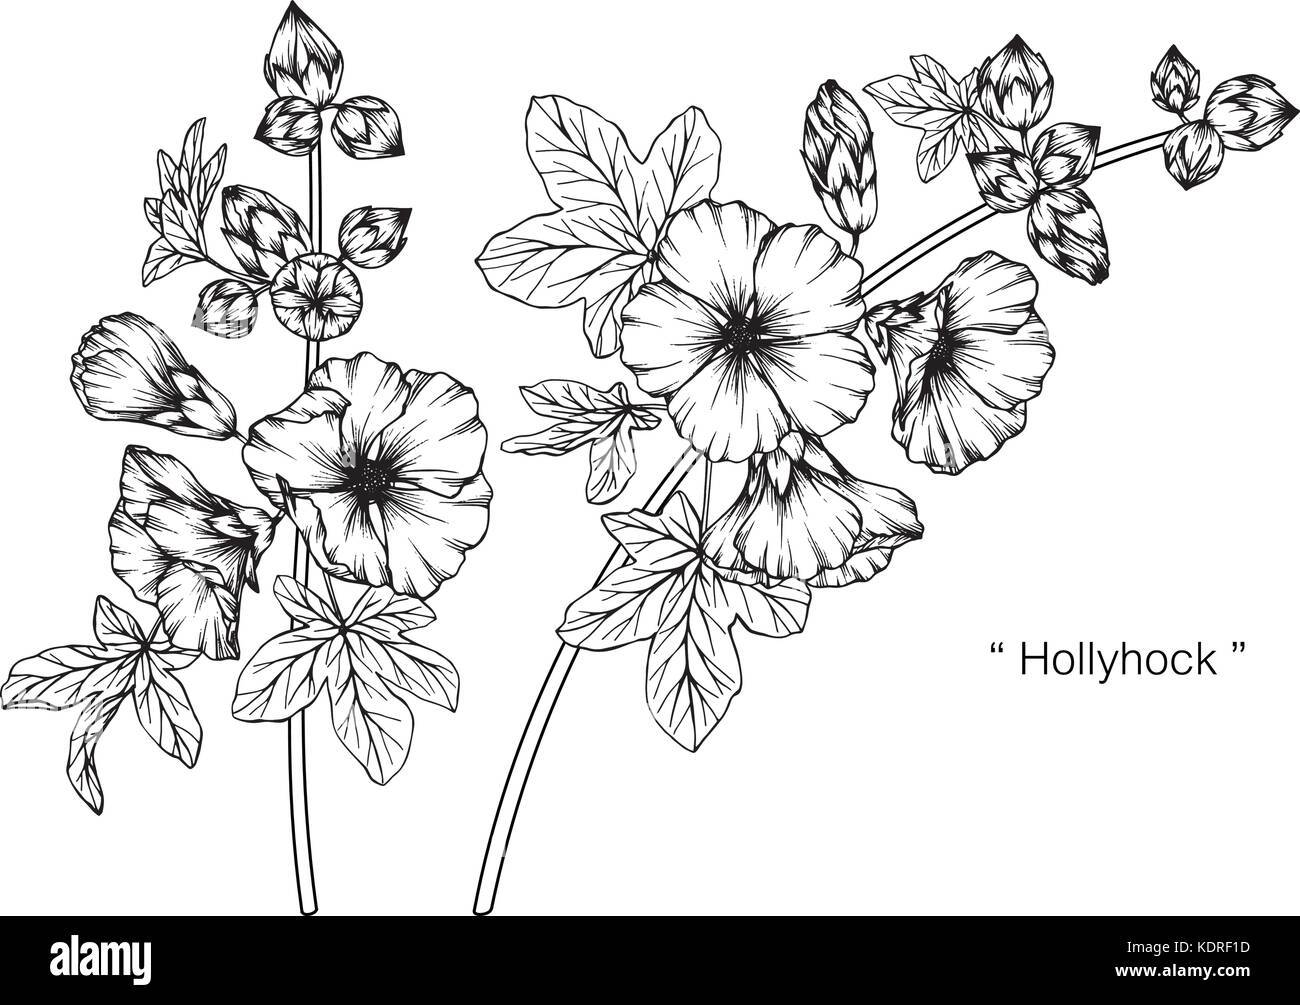 Fiore Hollyhock disegno illustrativo. In bianco e nero con la linea tecnica. Illustrazione Vettoriale